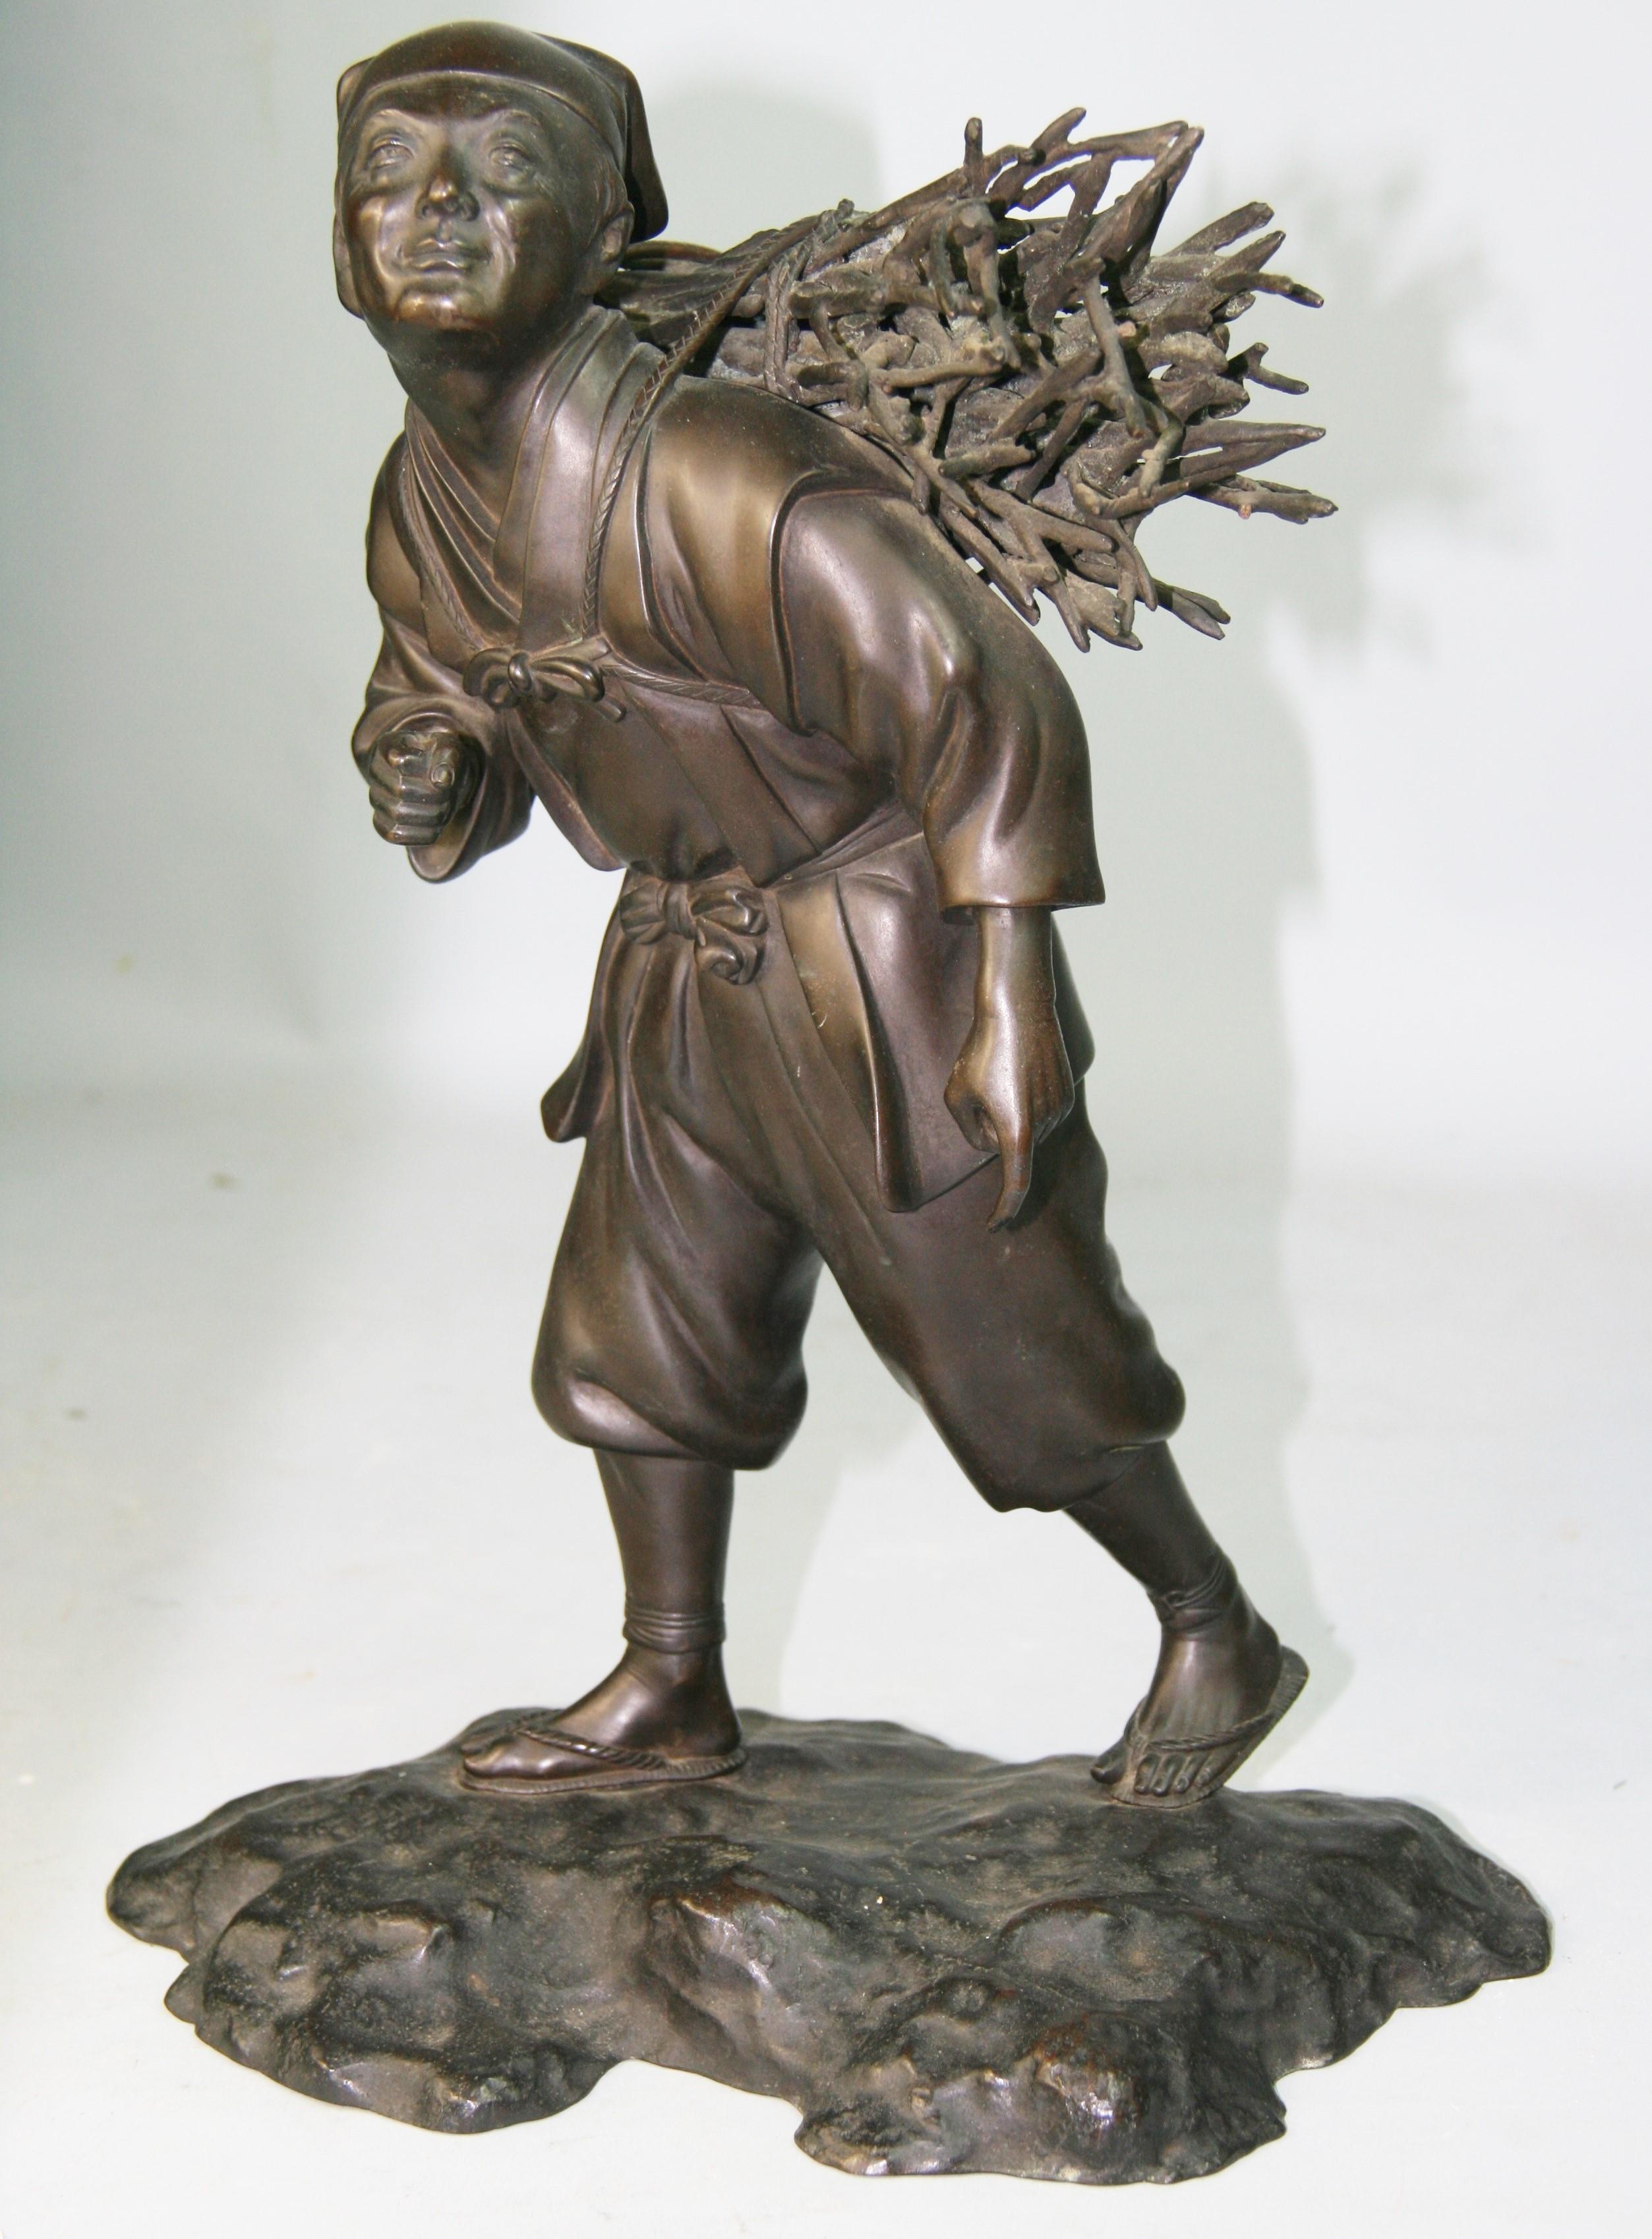 1351 Japanische Bronzeskulptur eines Arbeiters, der Holz trägt.
Unglaubliche Details.